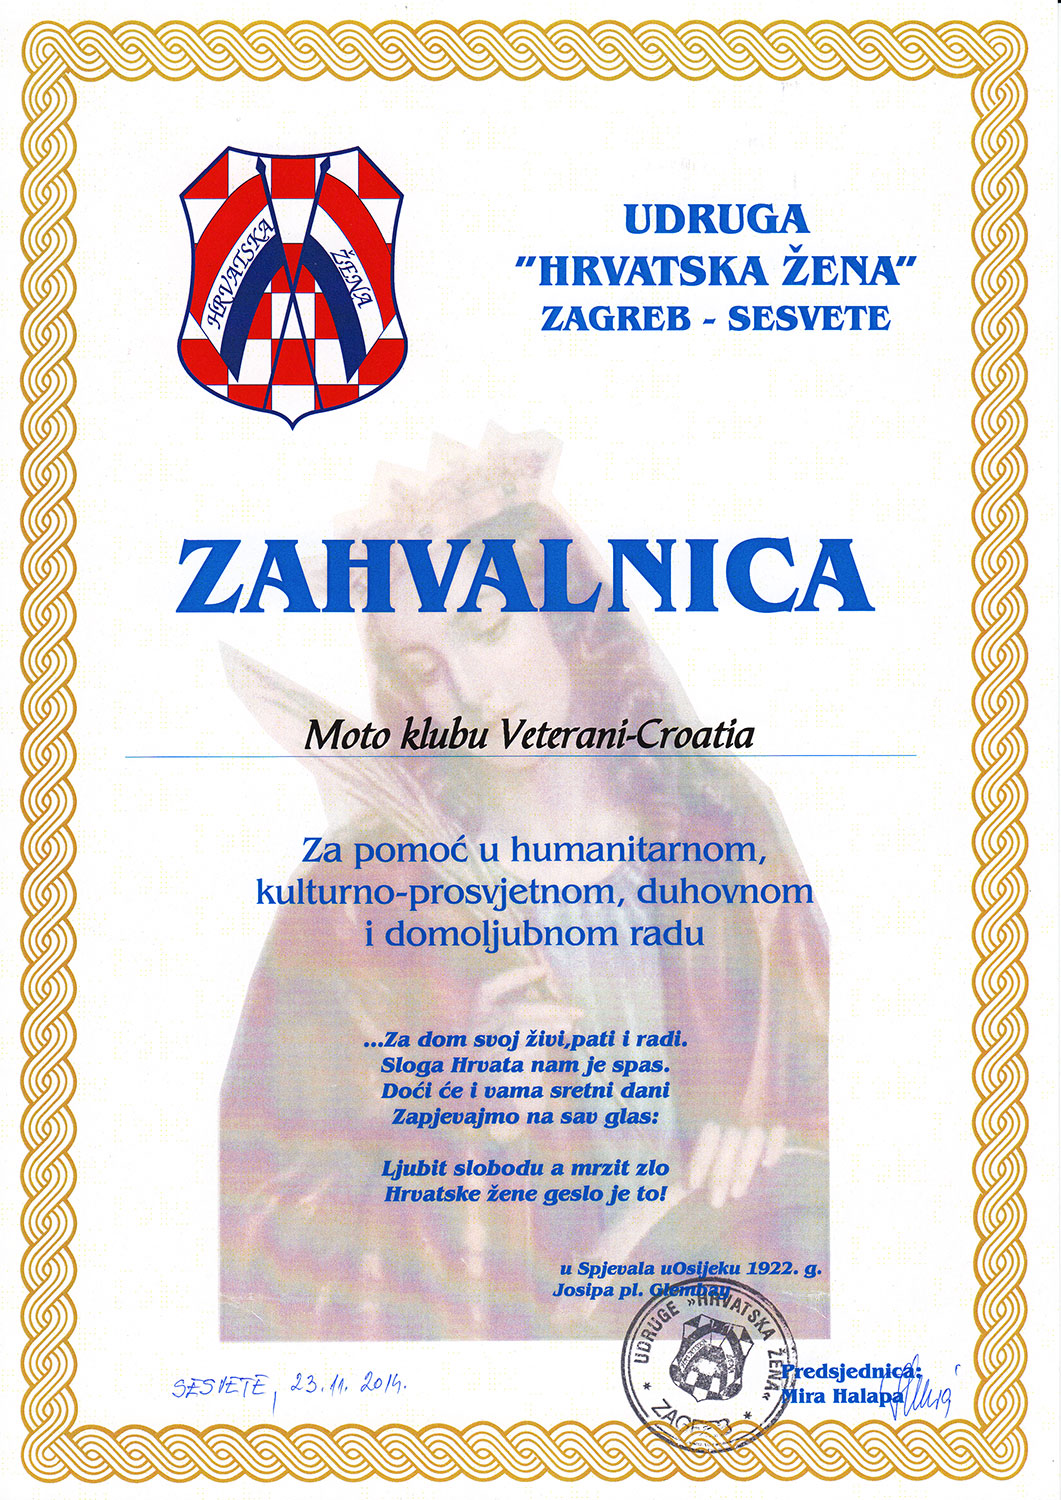 2014 11 23 udruga hrvatska zena sesvete